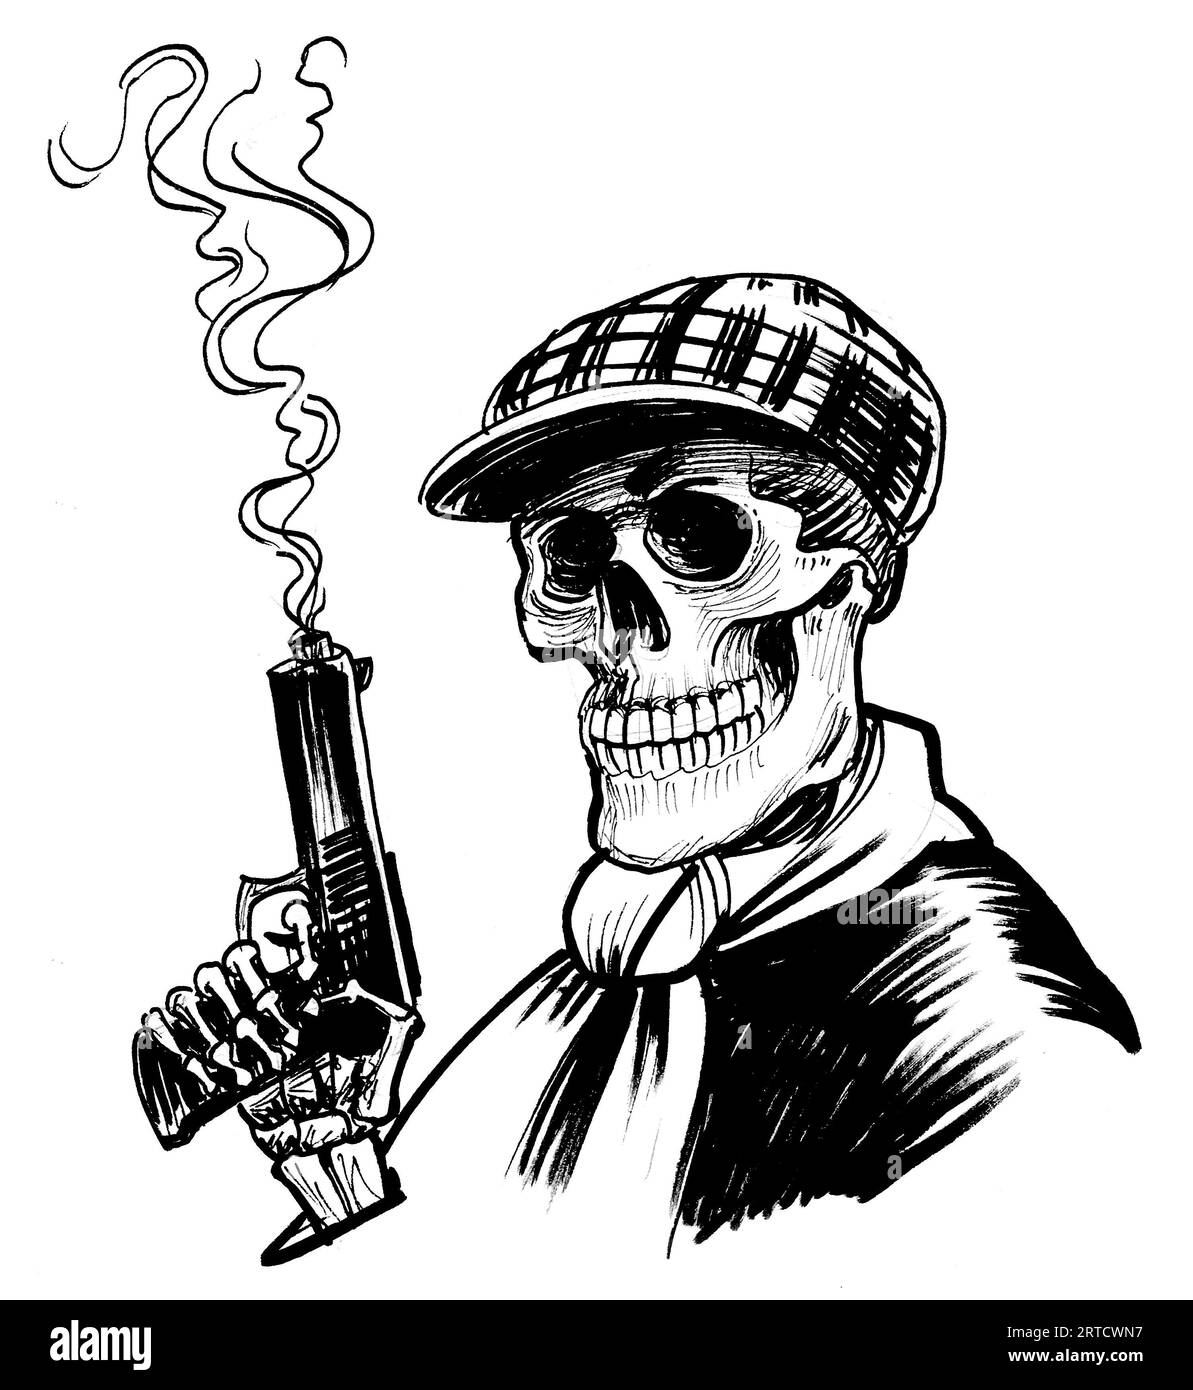 Banditenskelett mit einer Rauchwaffe. Handgezeichnete schwarze und weiße Skizze Stockfoto